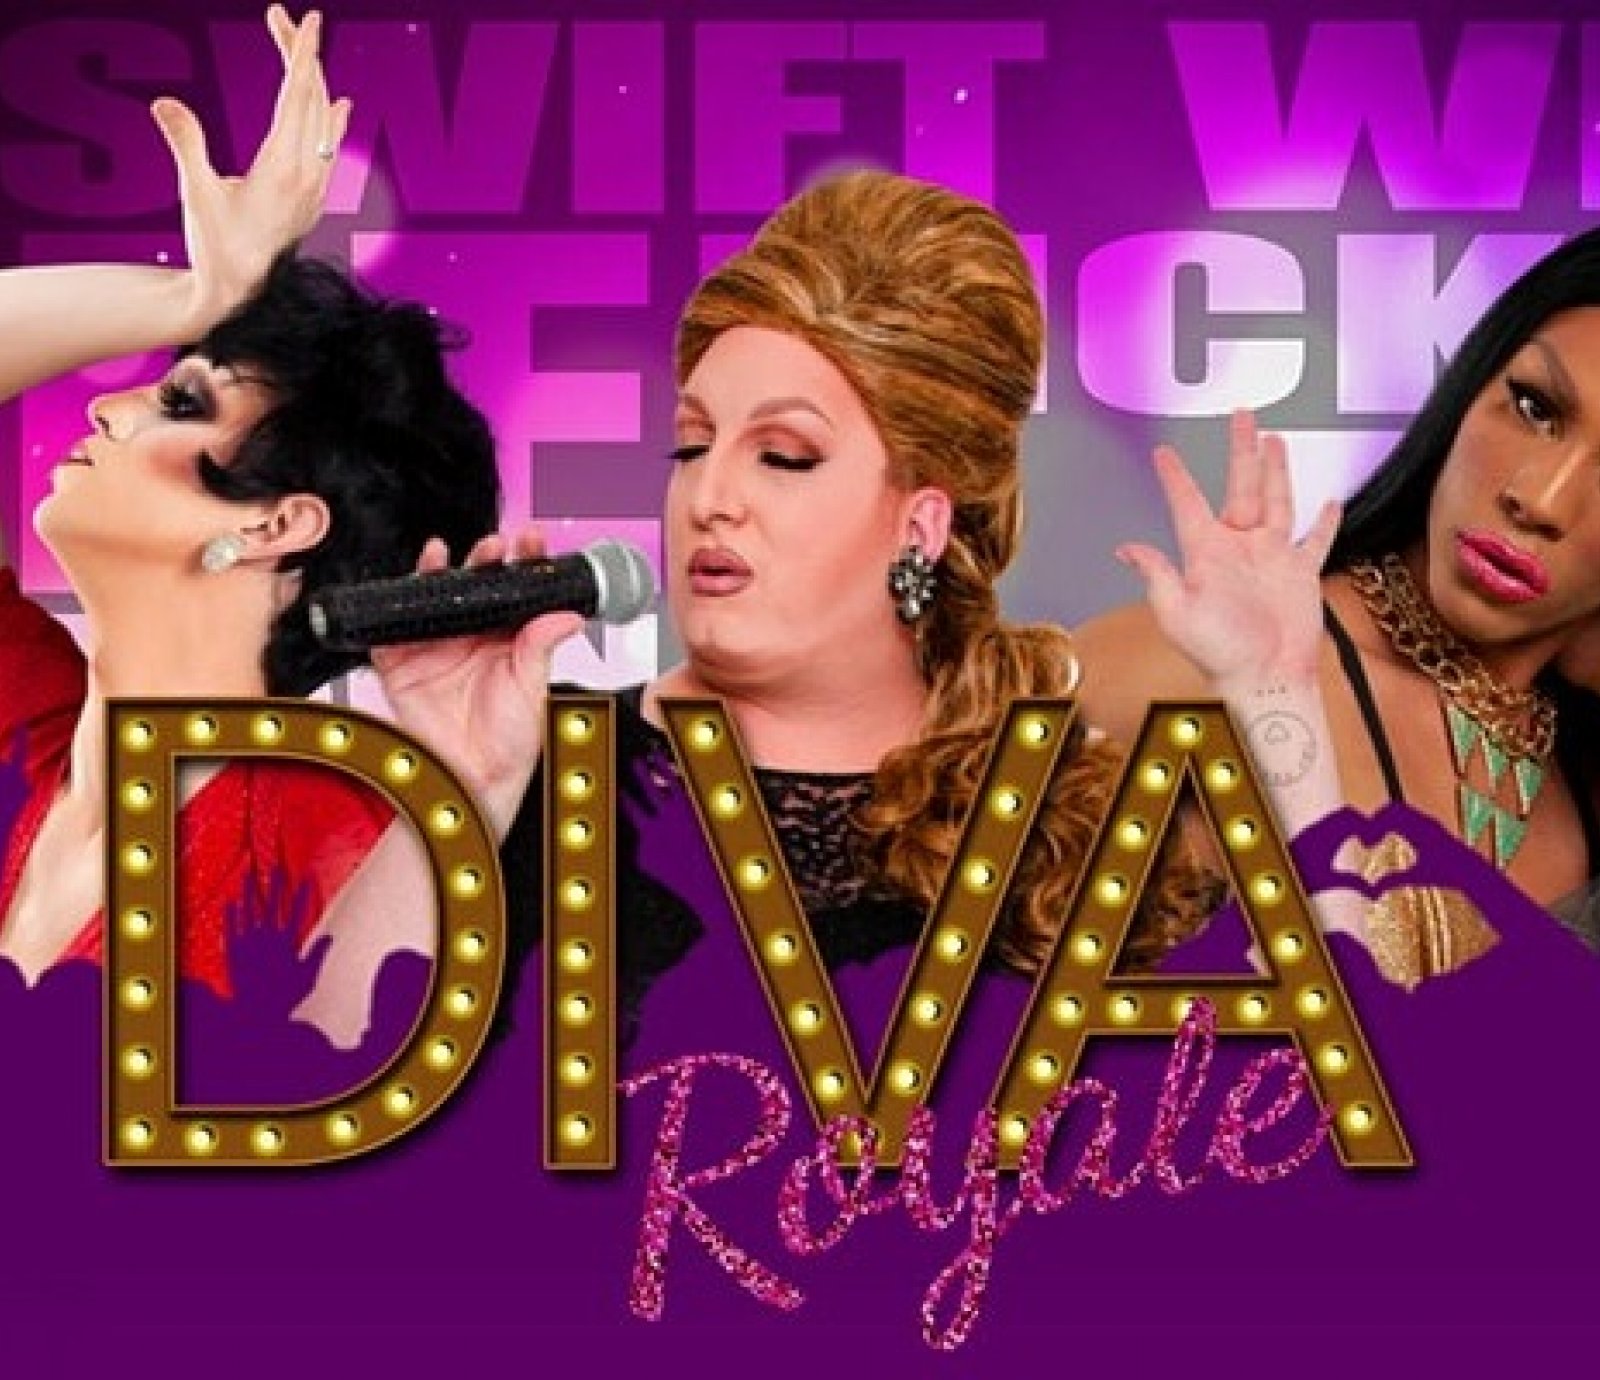 Diva Royale Drag Queen Show - Austin